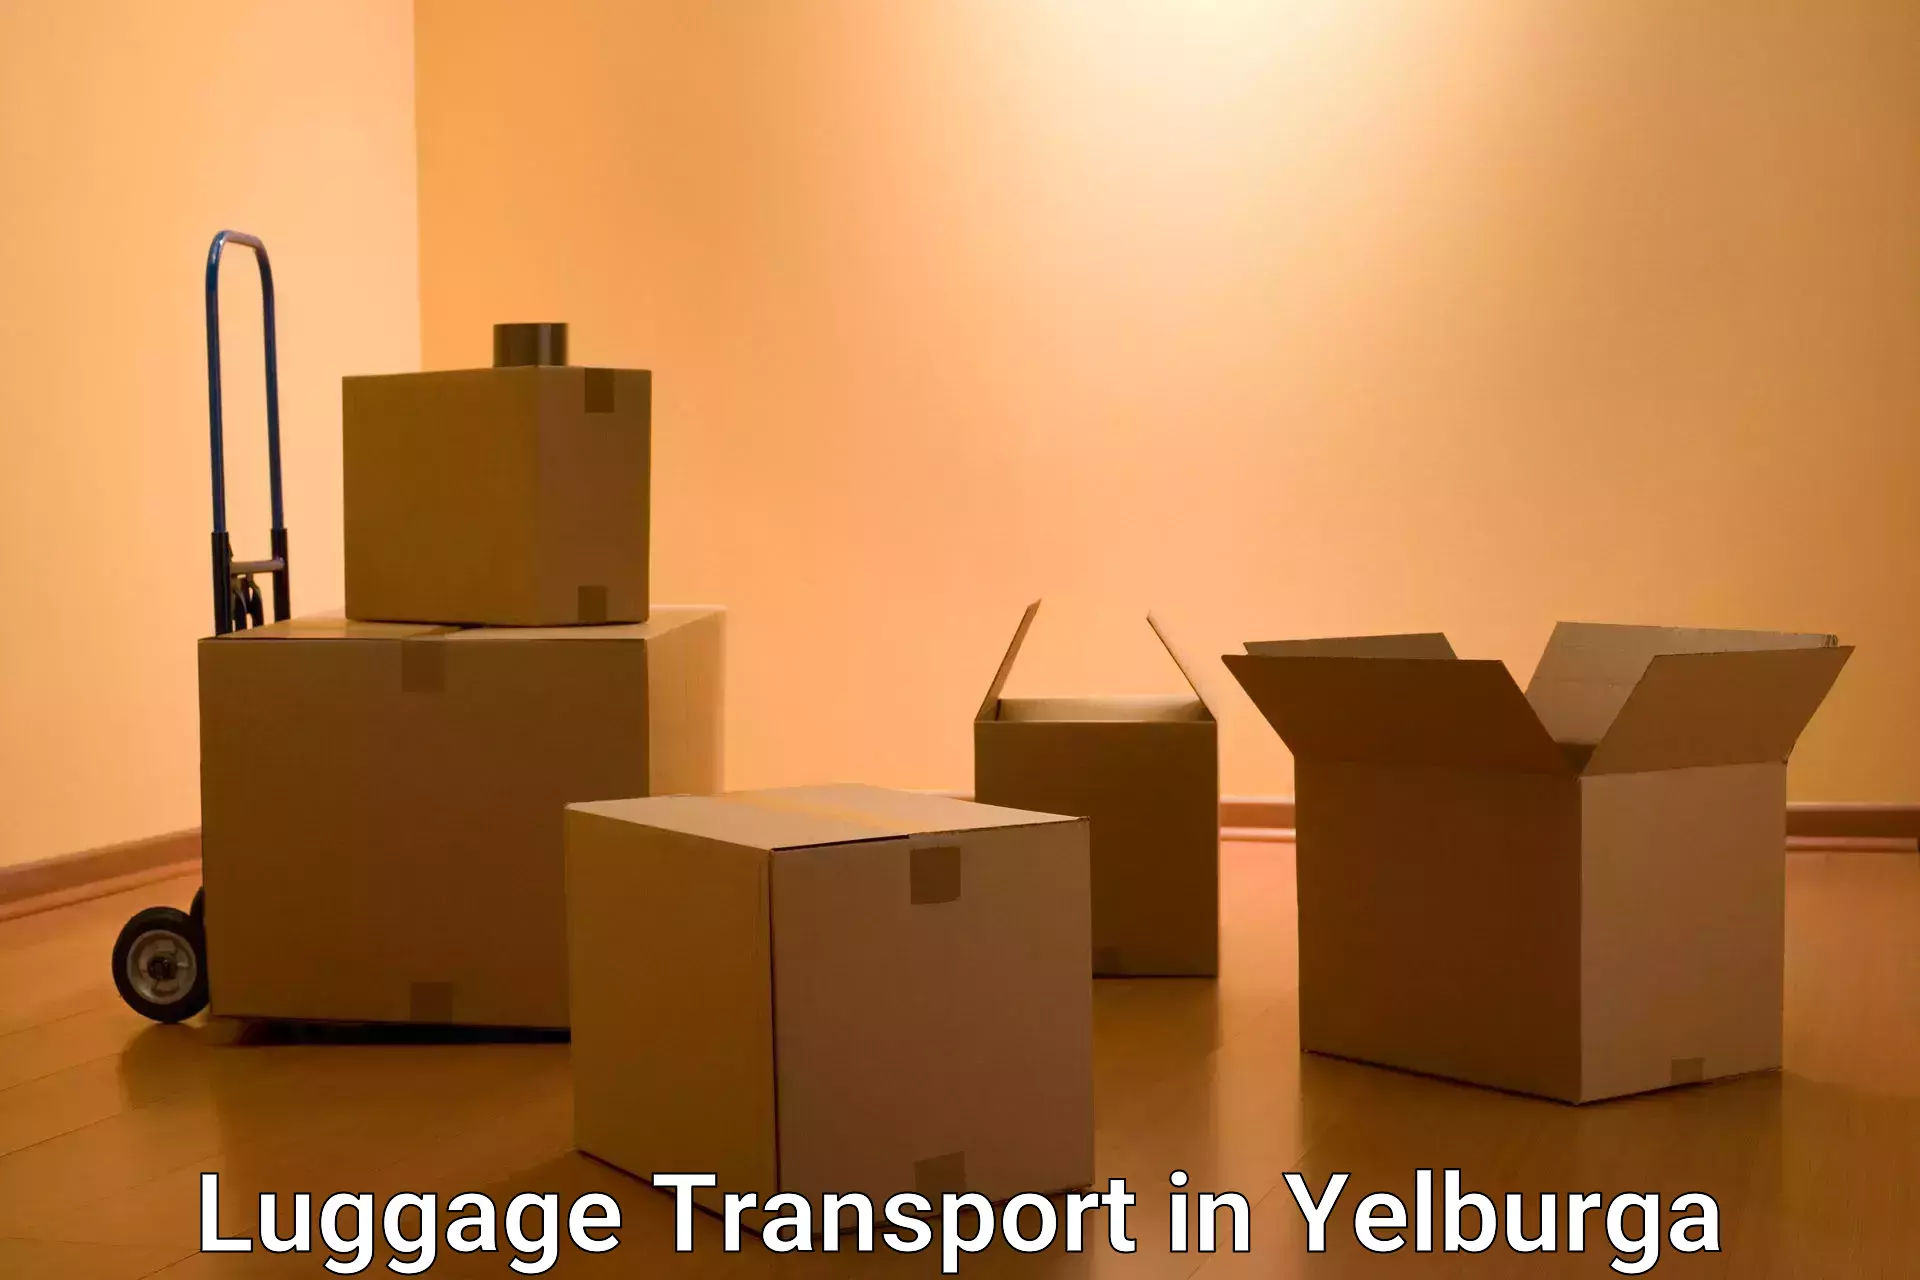 Baggage transport management in Yelburga